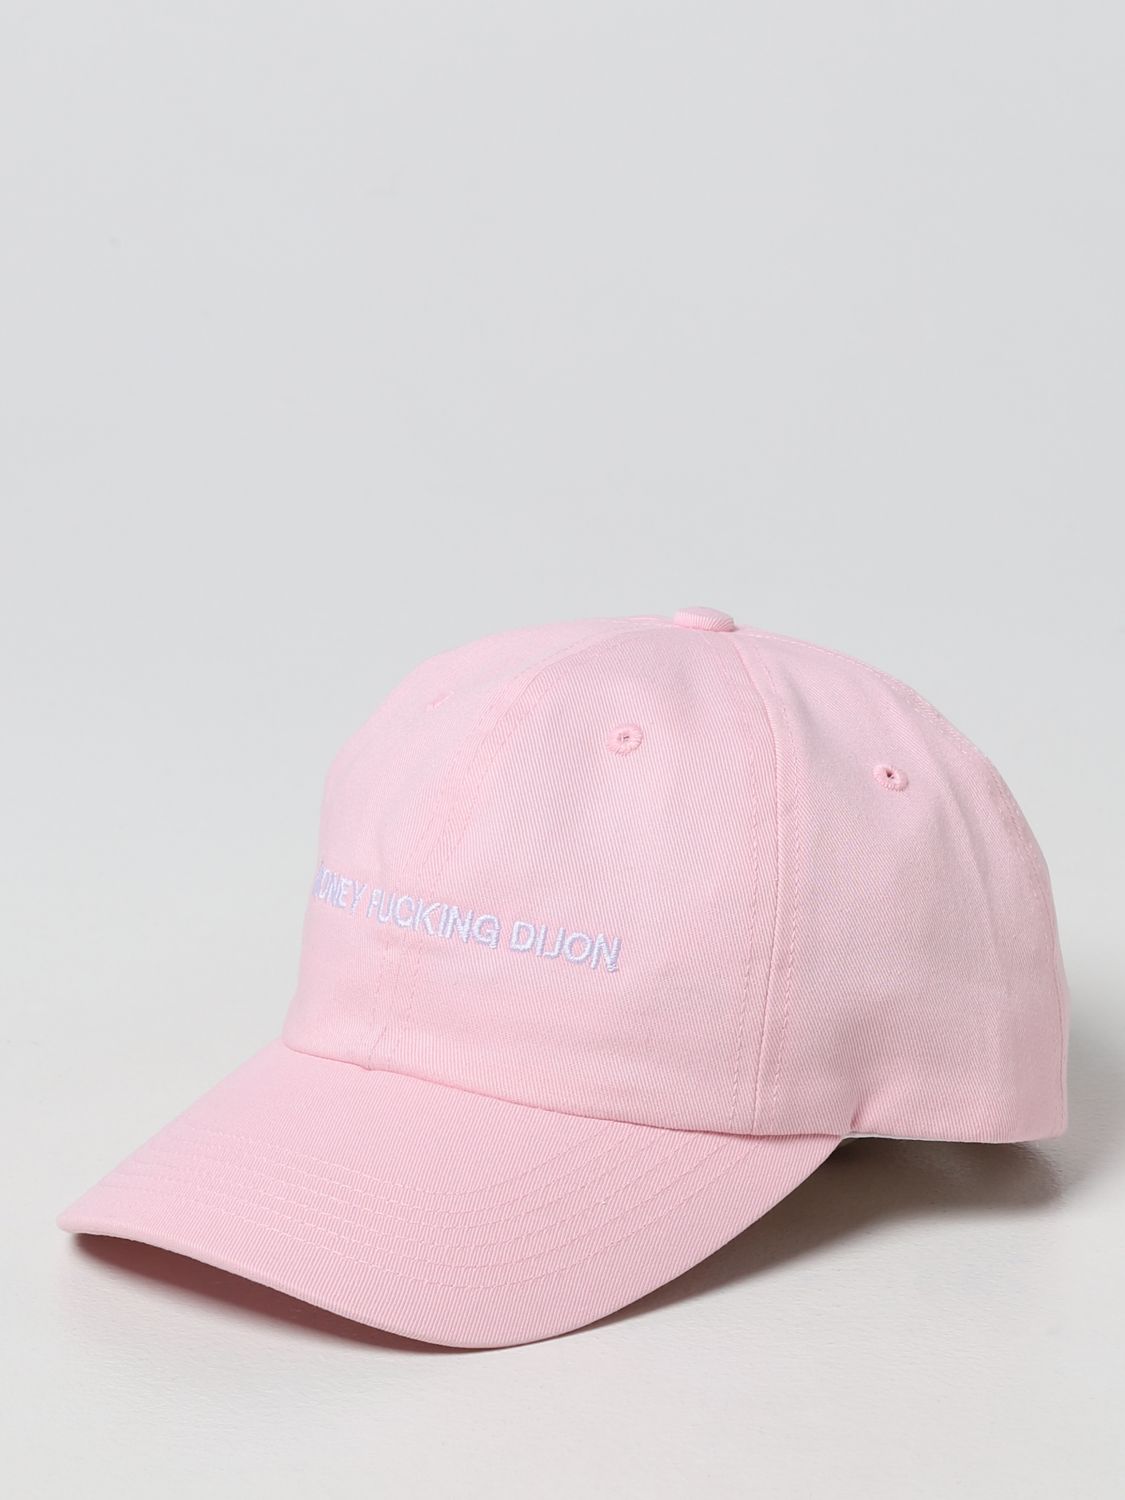 Hat Honey Fucking Dijon: Honey Fucking Dijon hat for men pink 1